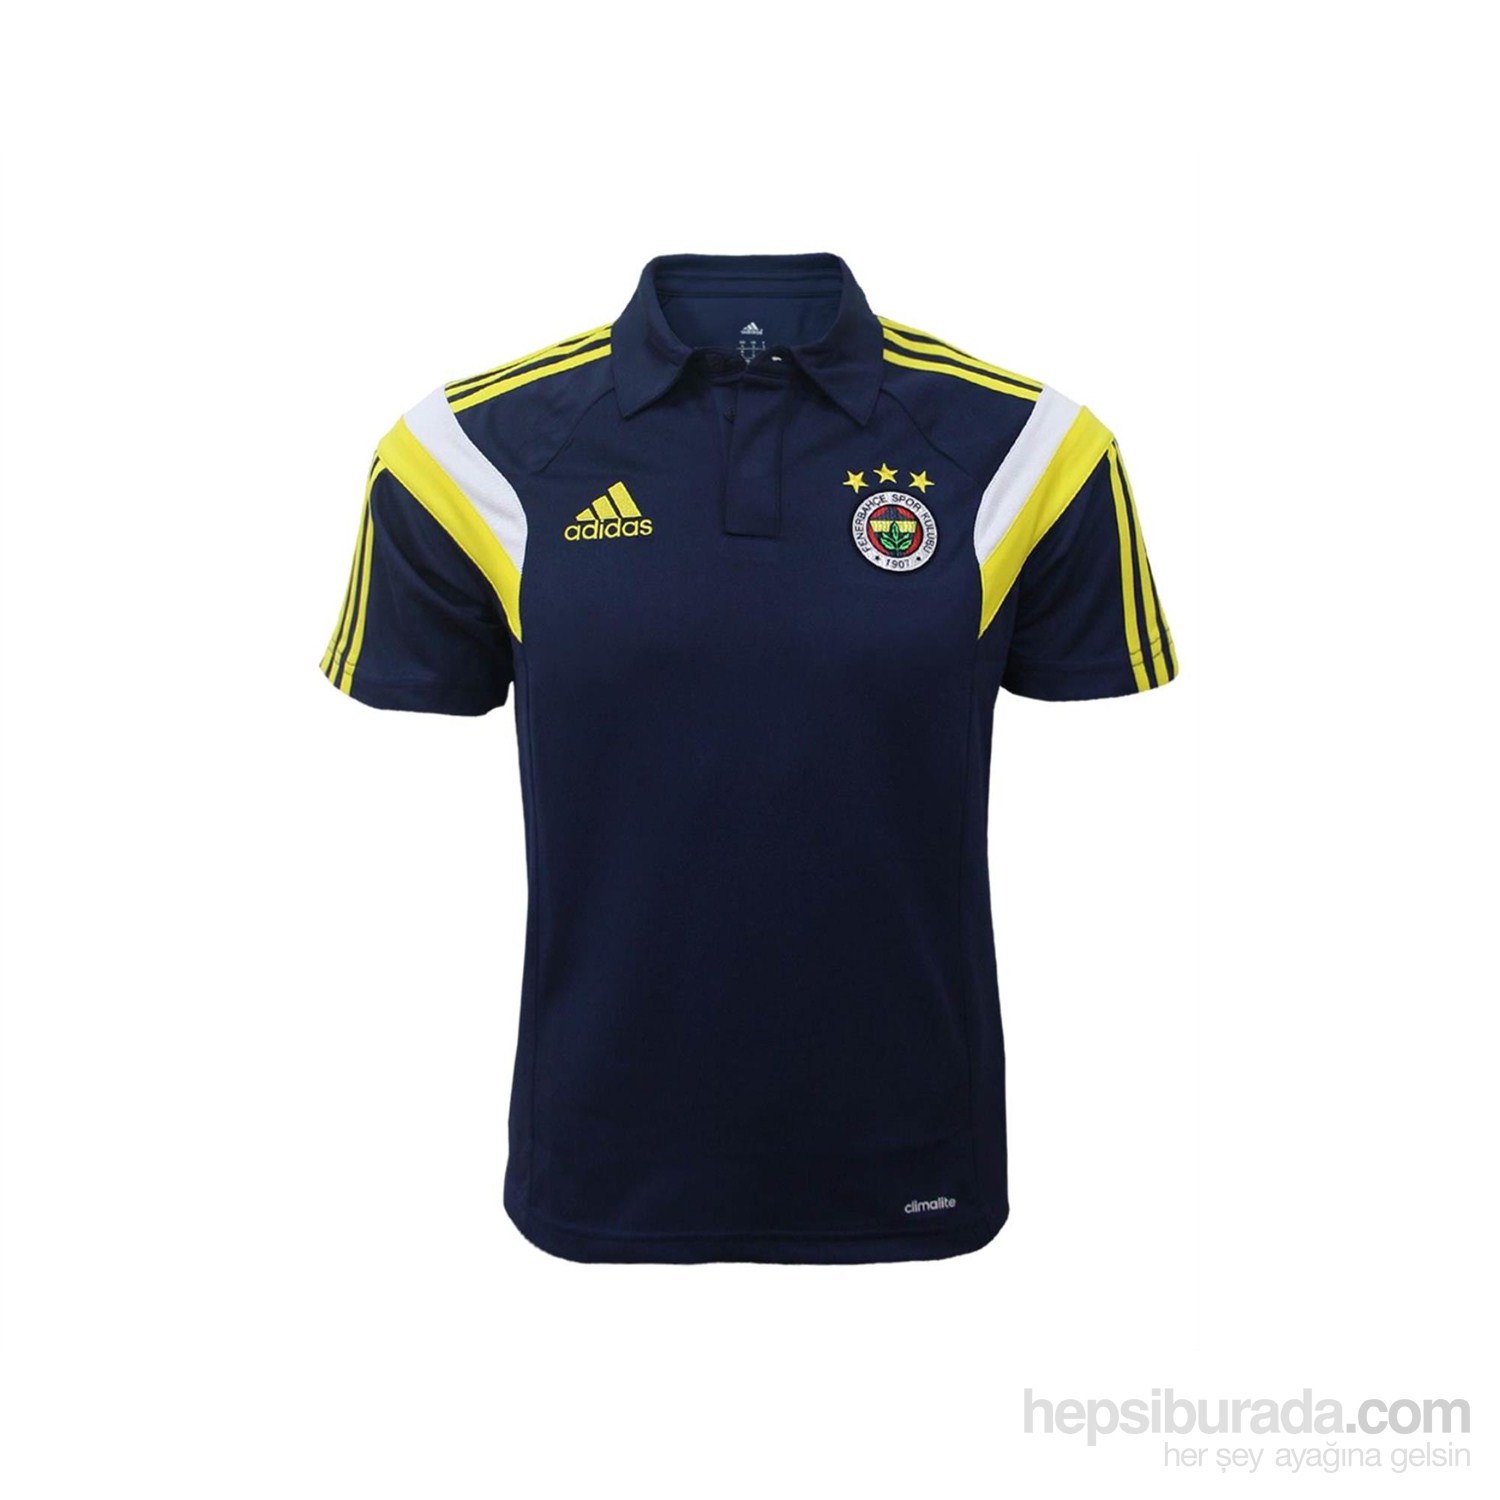 Fenerbahçe FB 2014 Polo tshirt Navy H78970